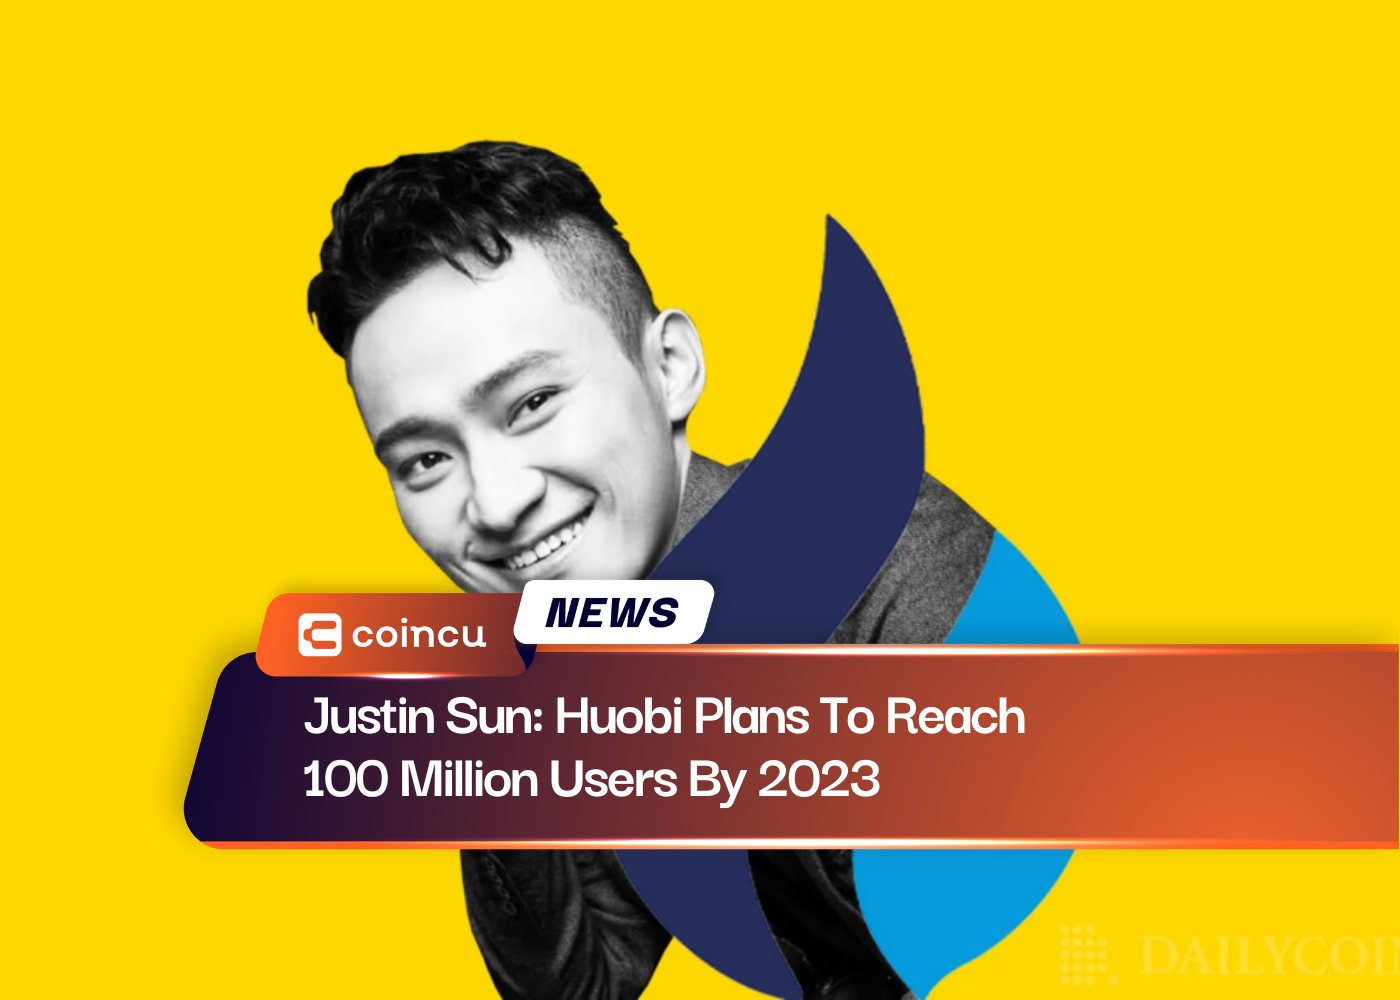 저스틴 선: Huobi는 100년까지 2023억 명의 사용자를 확보할 계획입니다